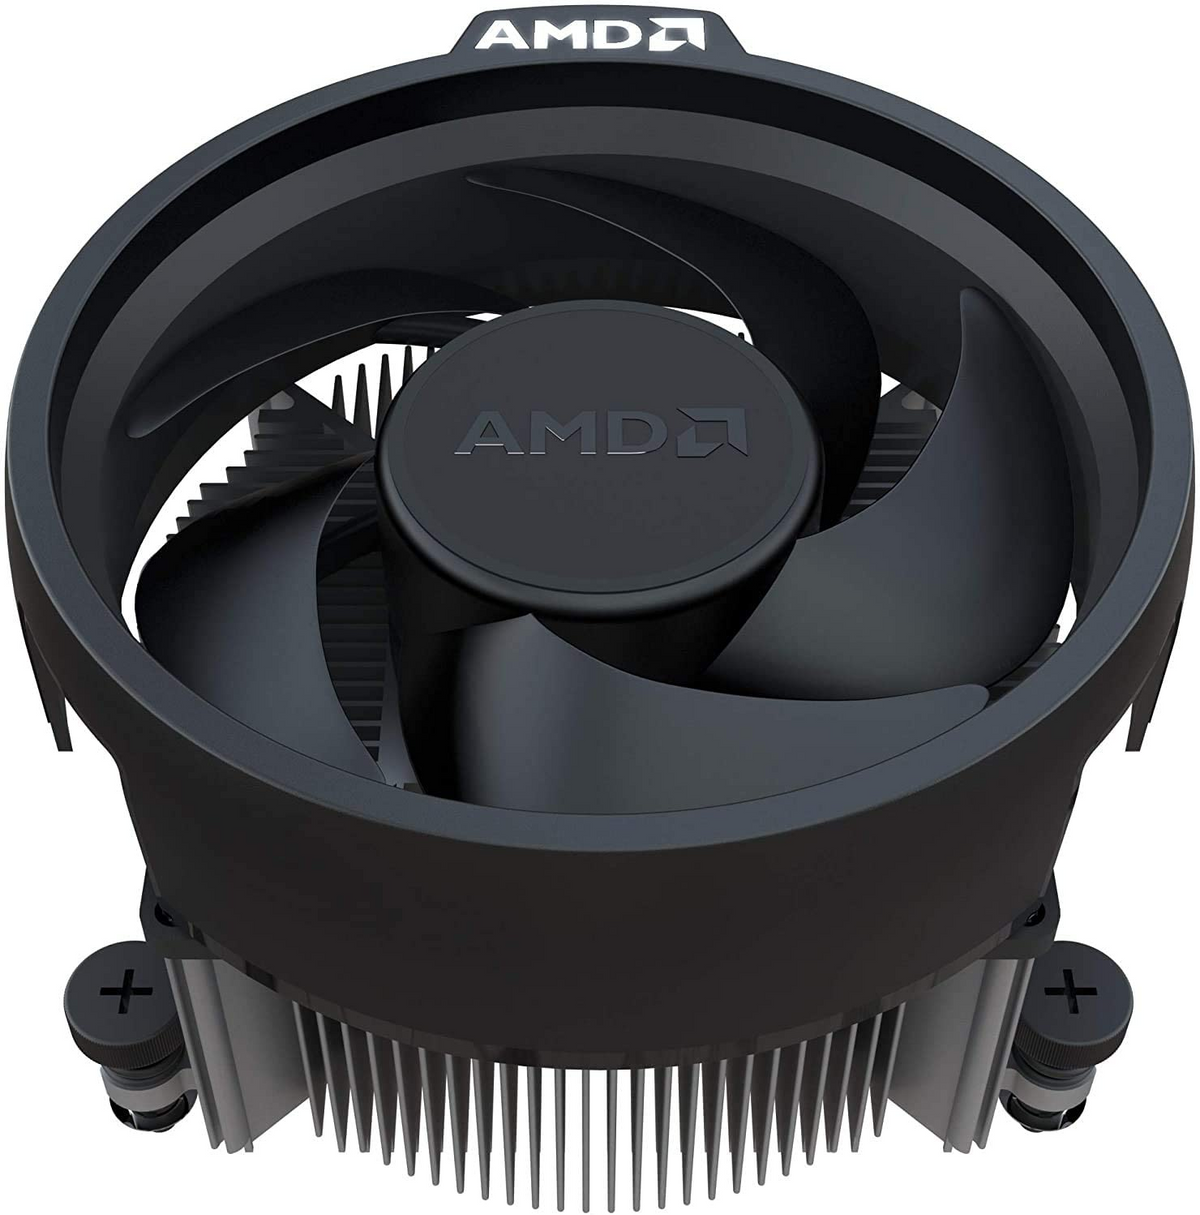 Boxed-Kühler, mit AMD Prozessor 5600G Mehrfarbig